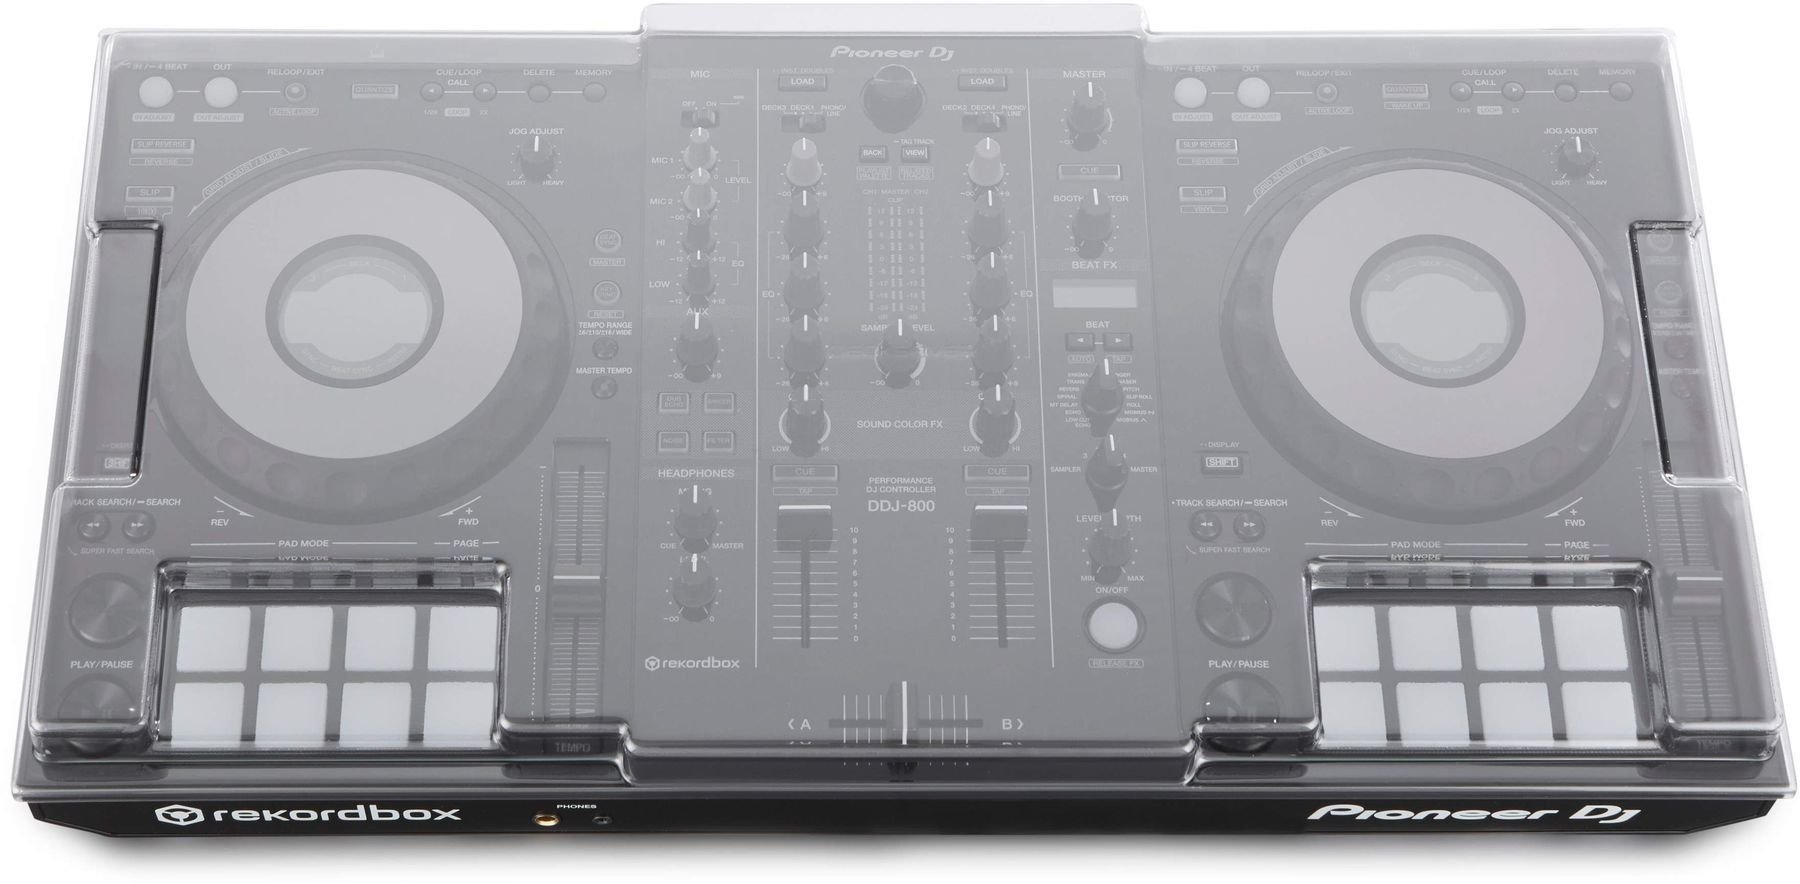 Couvercle de protection pour contrôleurs DJ Decksaver Pioneer DDJ-800